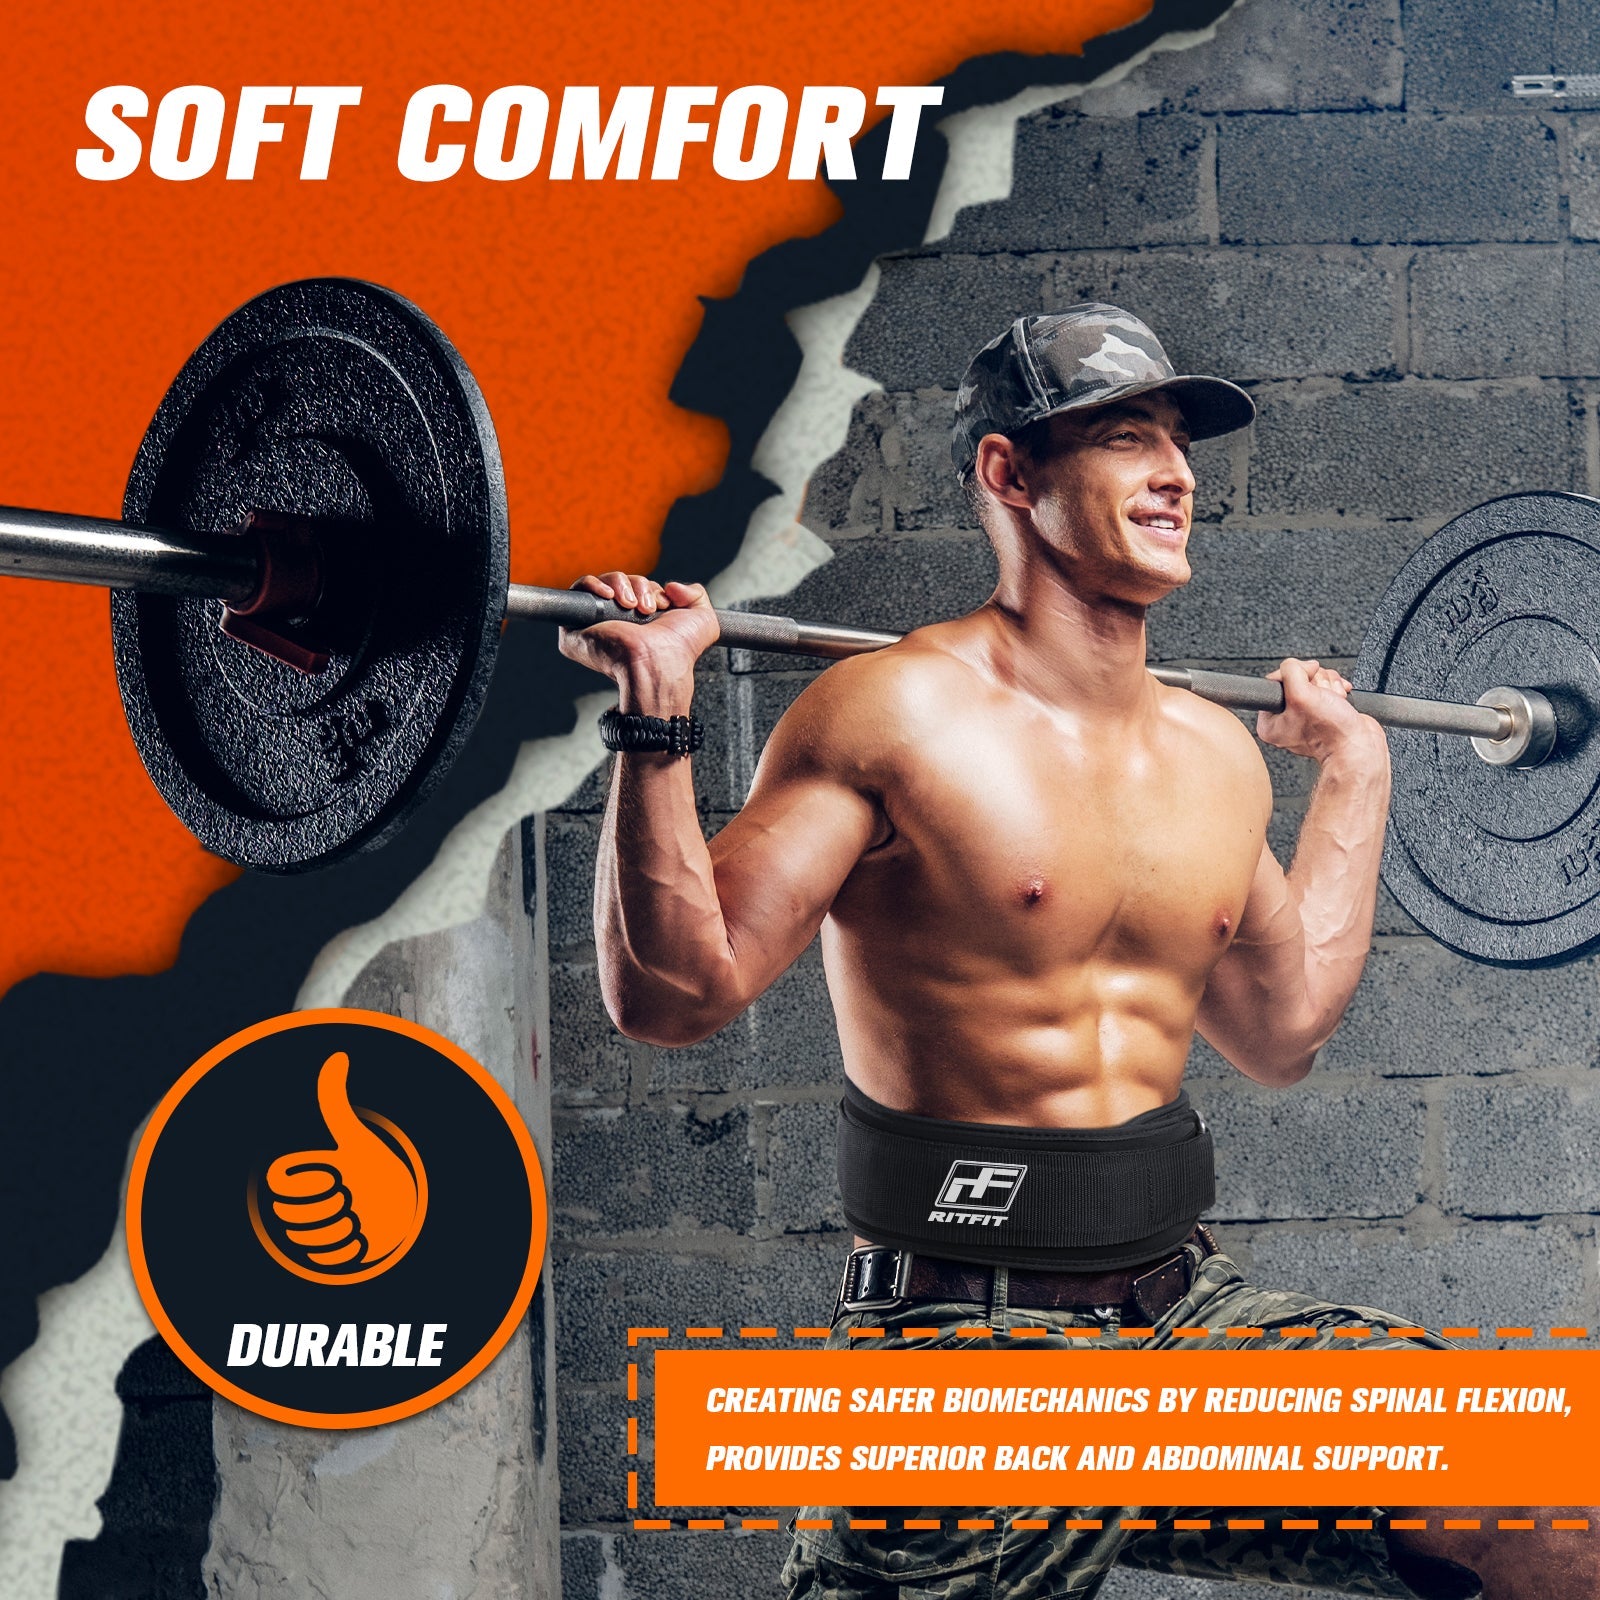 https://www.ritfitsports.com/cdn/shop/products/ritfit-weight-lifting-belt-6-low-profile-workout-belt-accessories-ritfit-812264.jpg?v=1652532096